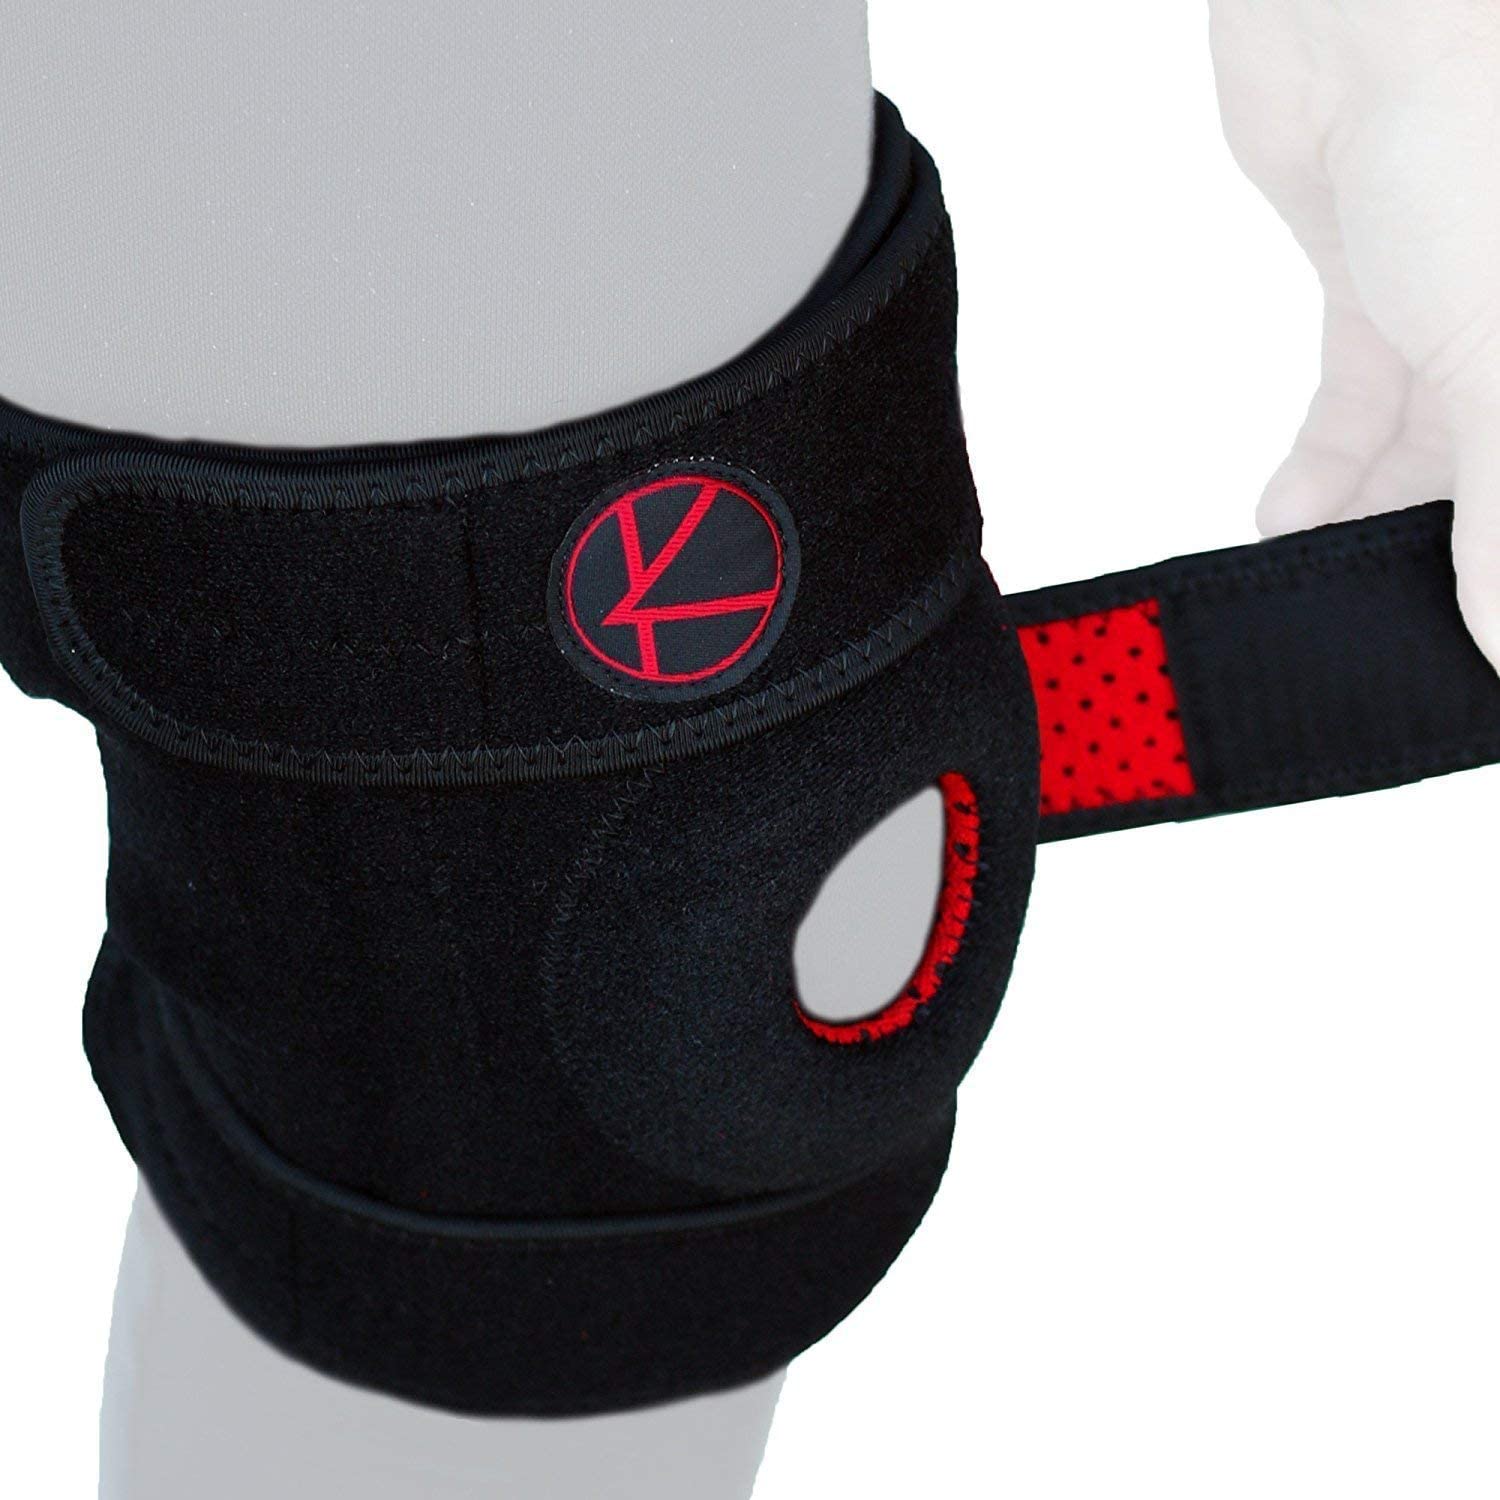 Zendi-K Knee Support (S,M,L,XL,XXL) 1's